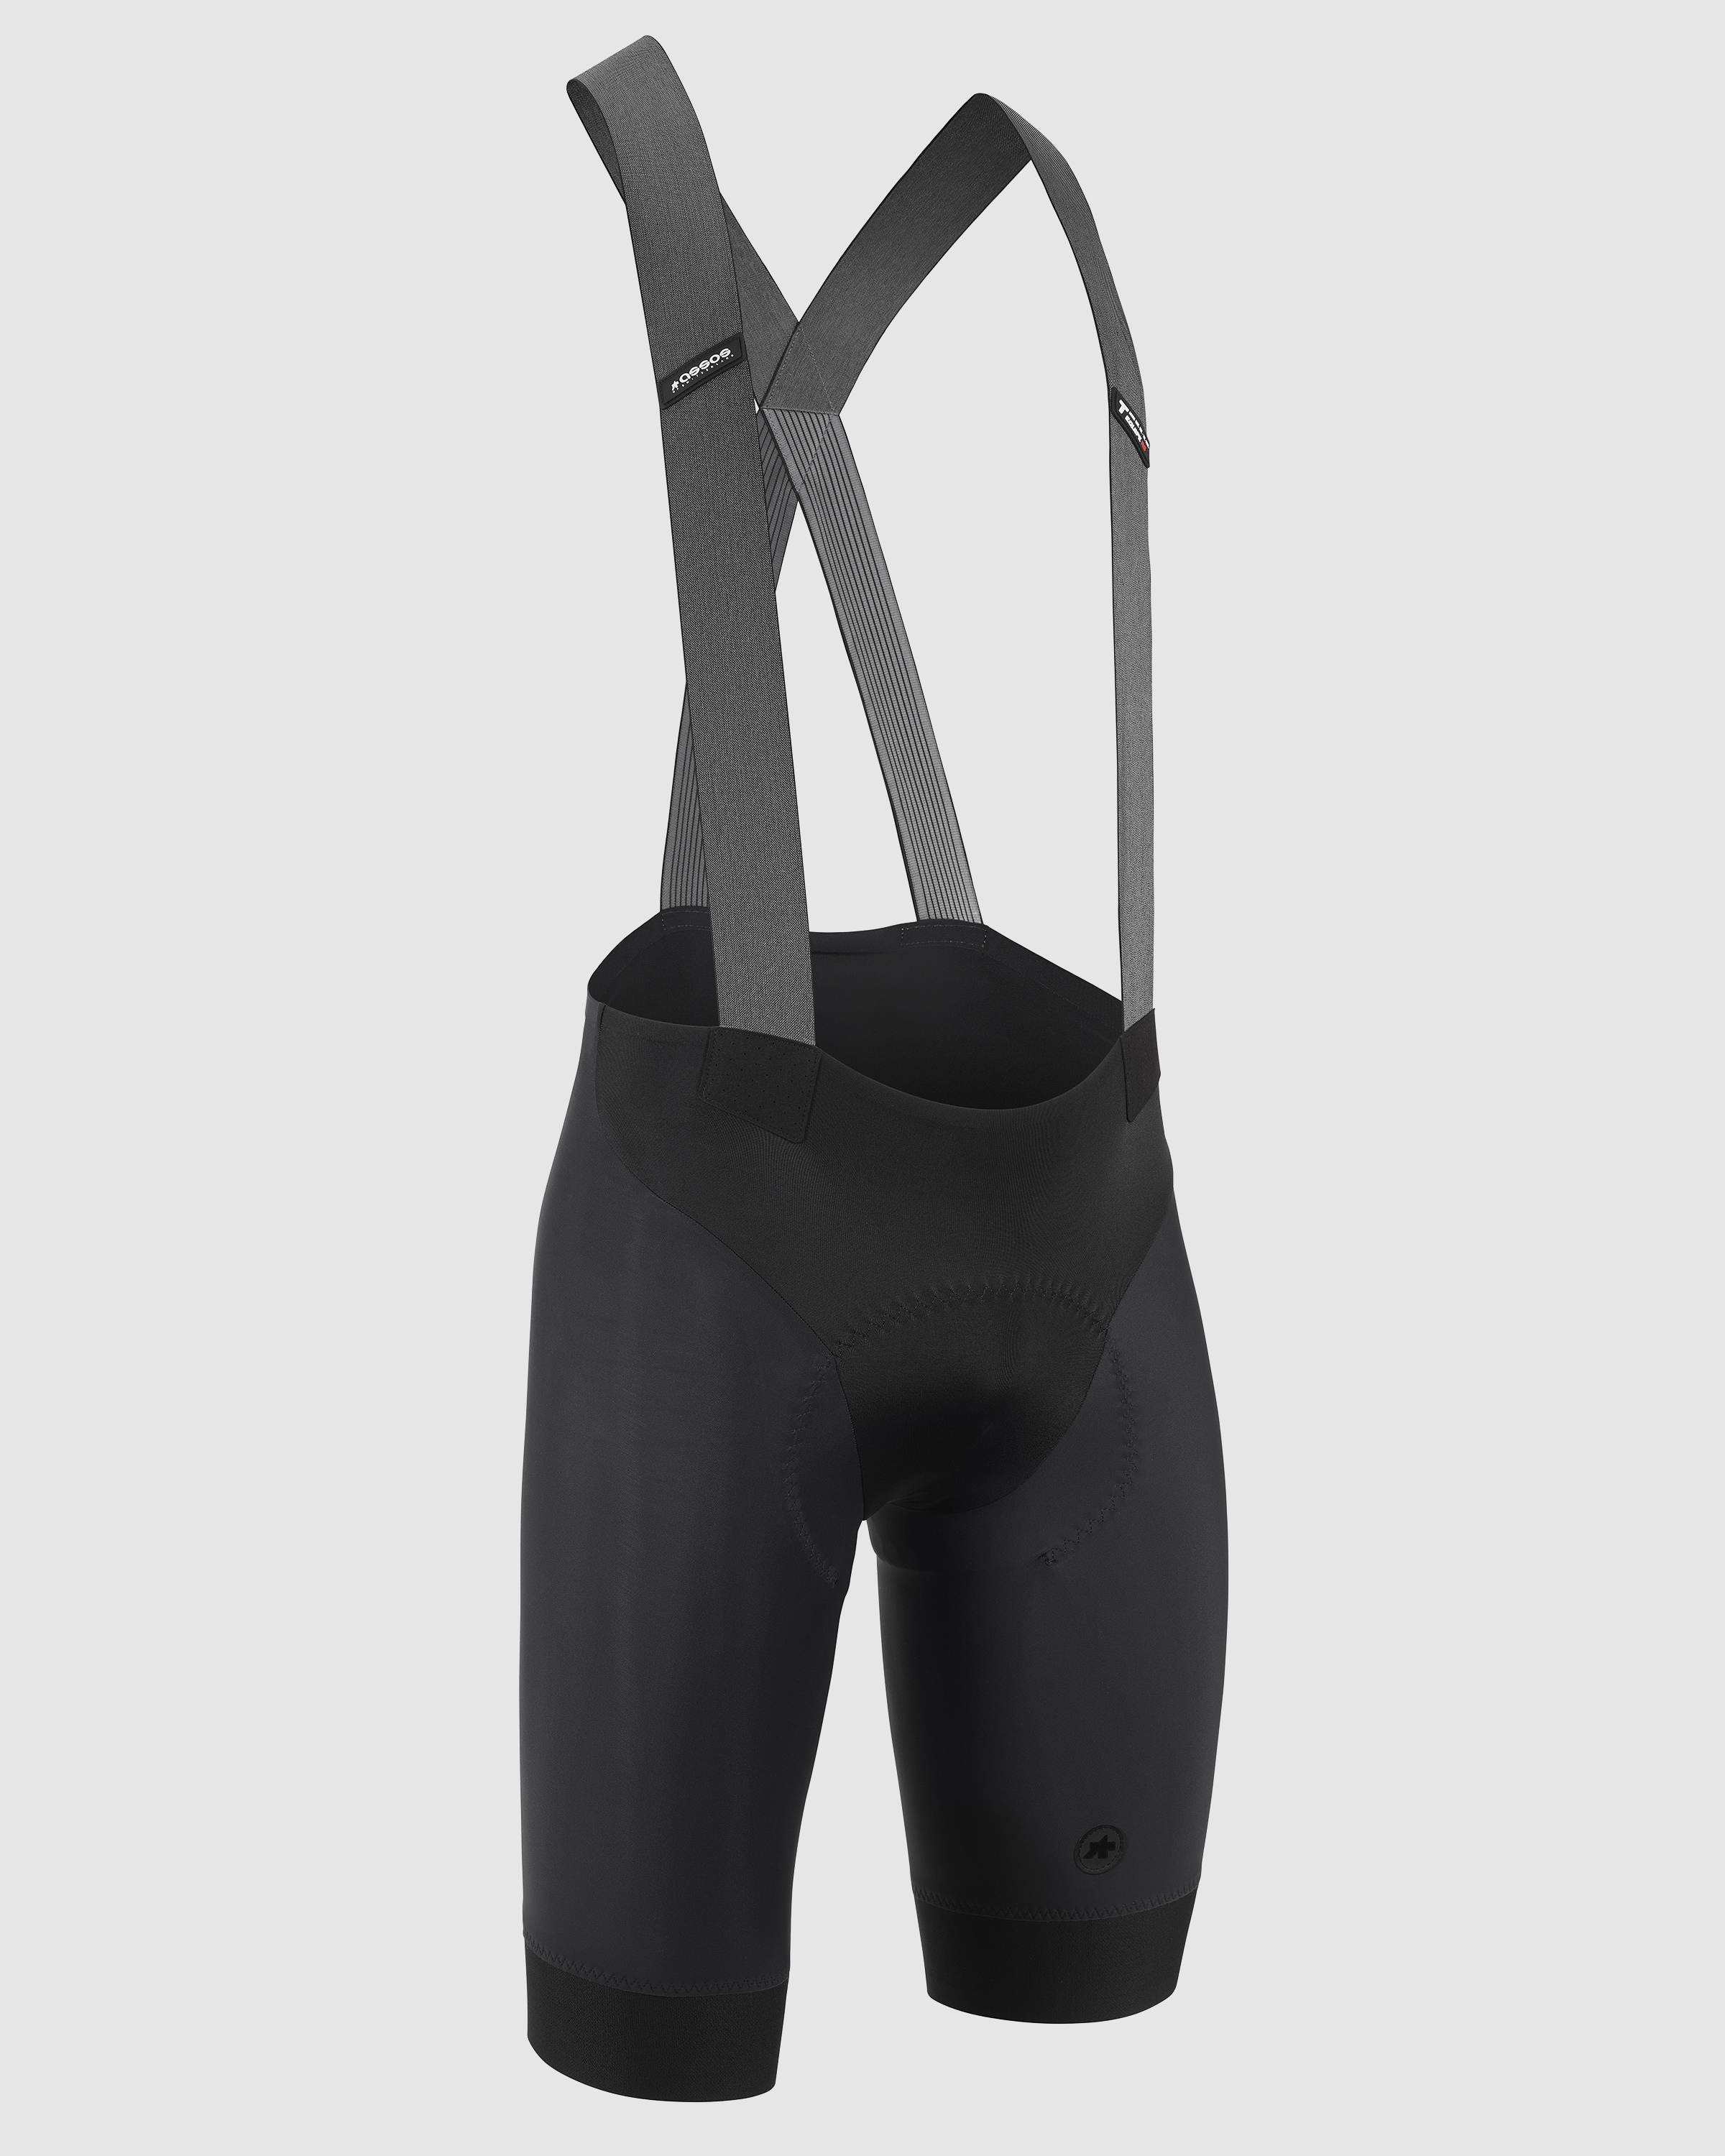 EQUIPE RS Bib Shorts S9 Black » Of Switzerland